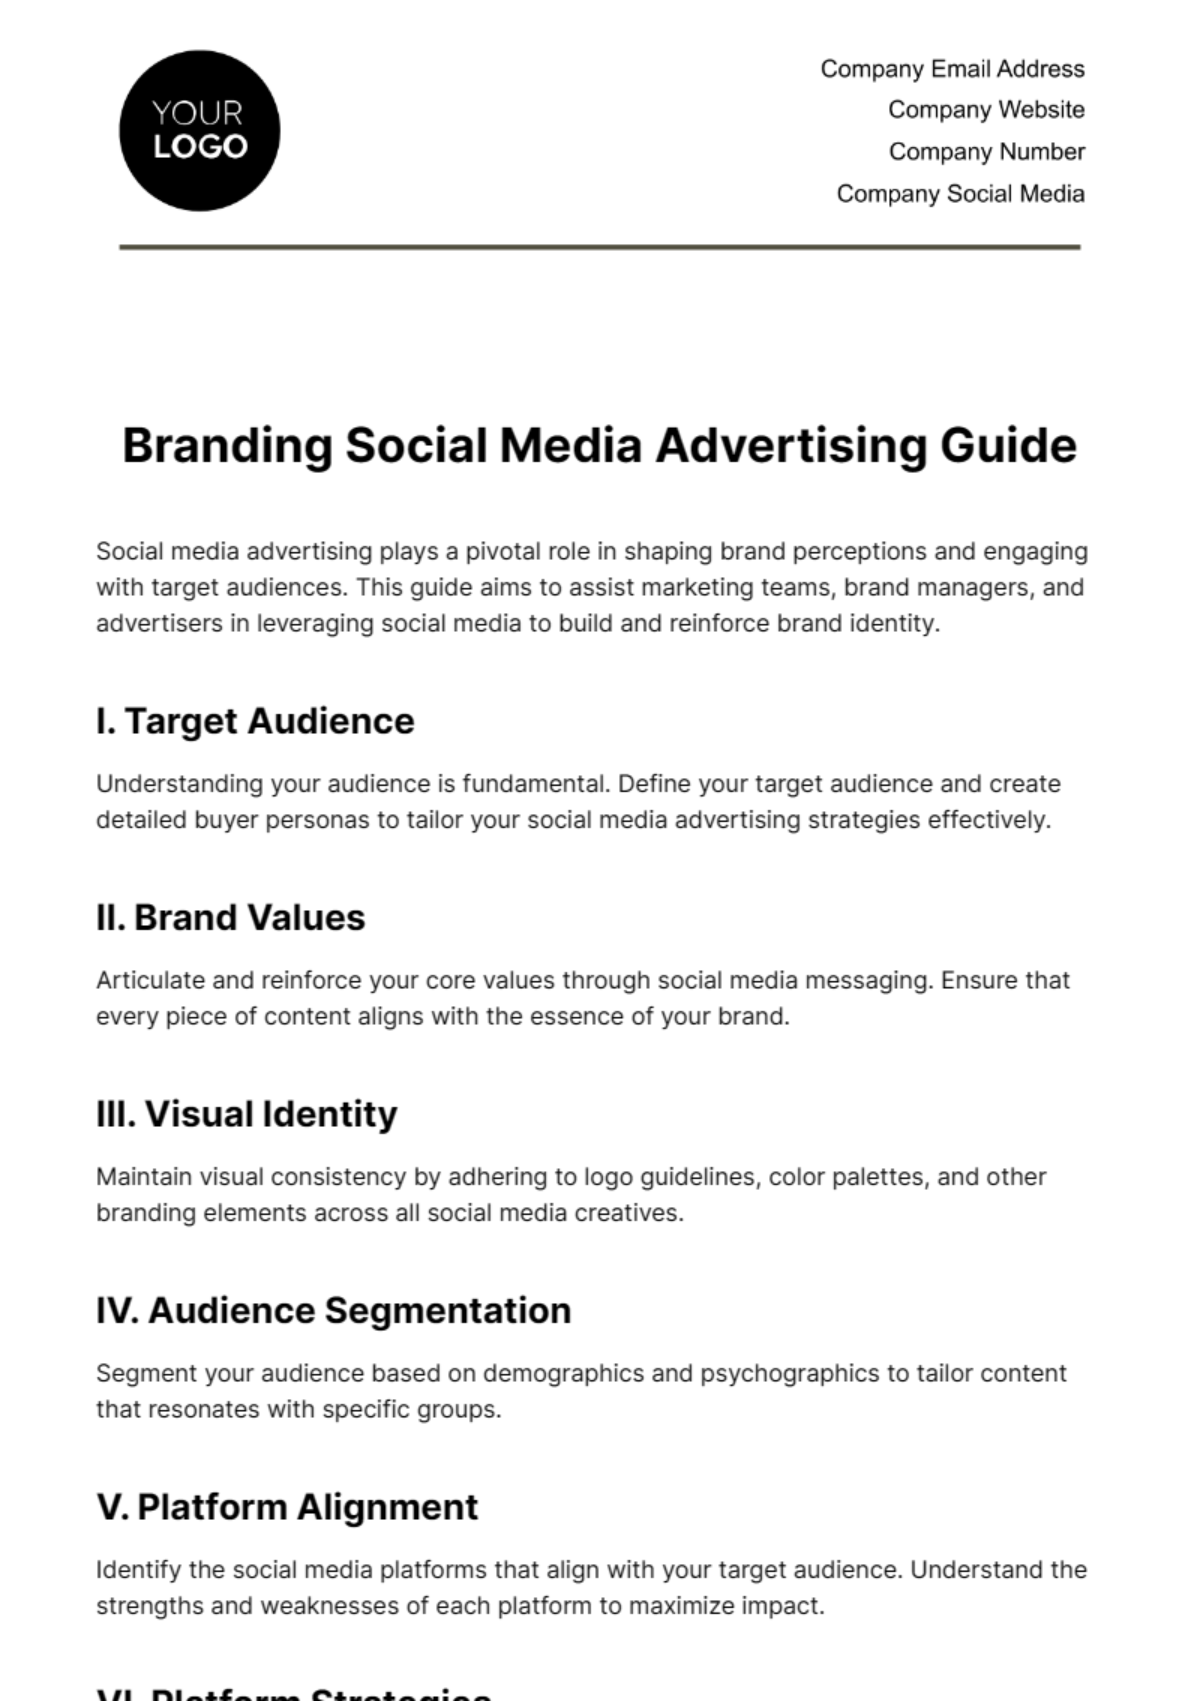 Branding Social Media Advertising Guide Template